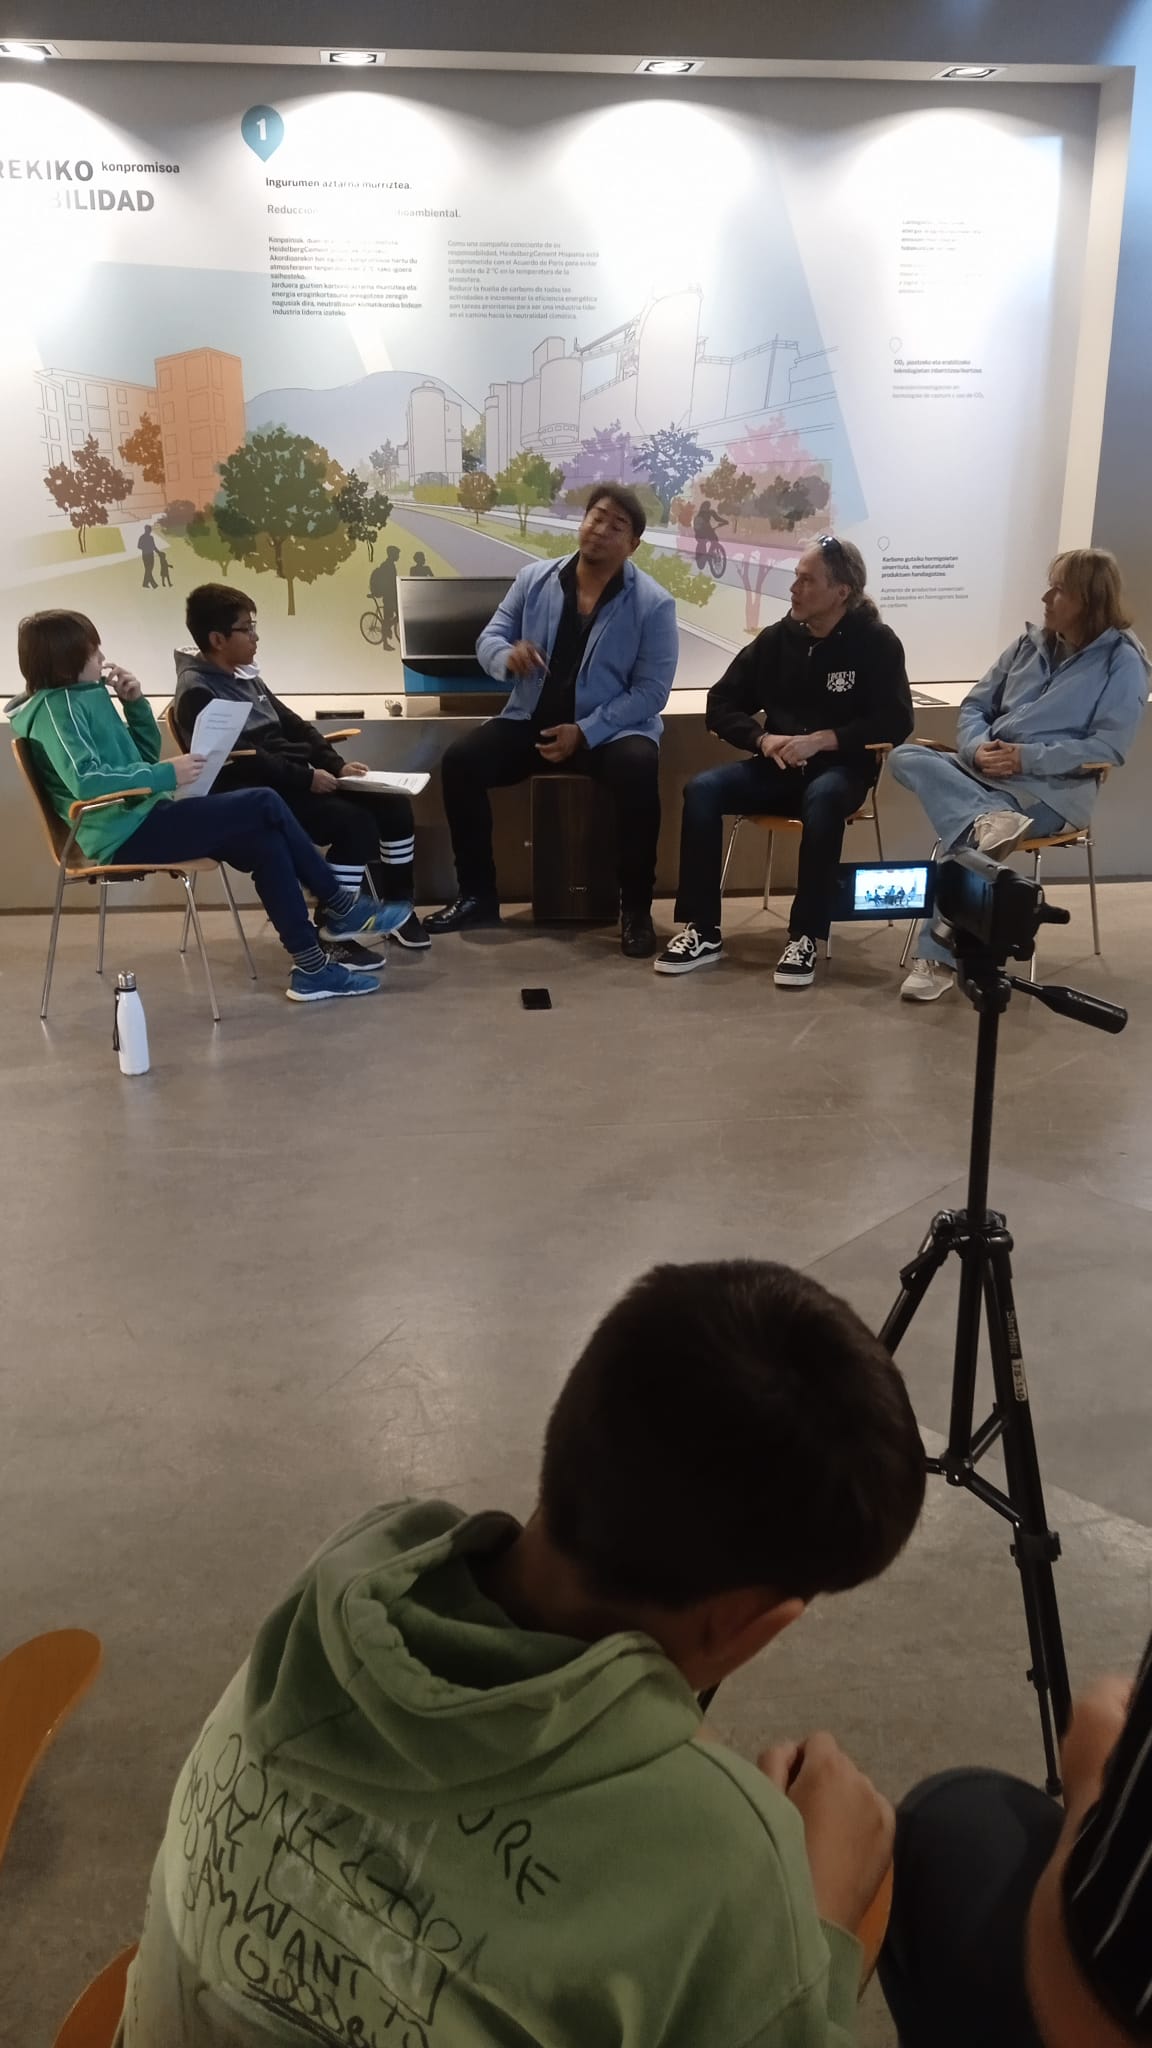 Imagen de una cámara de video y unos jóvenes sentados en una aula.